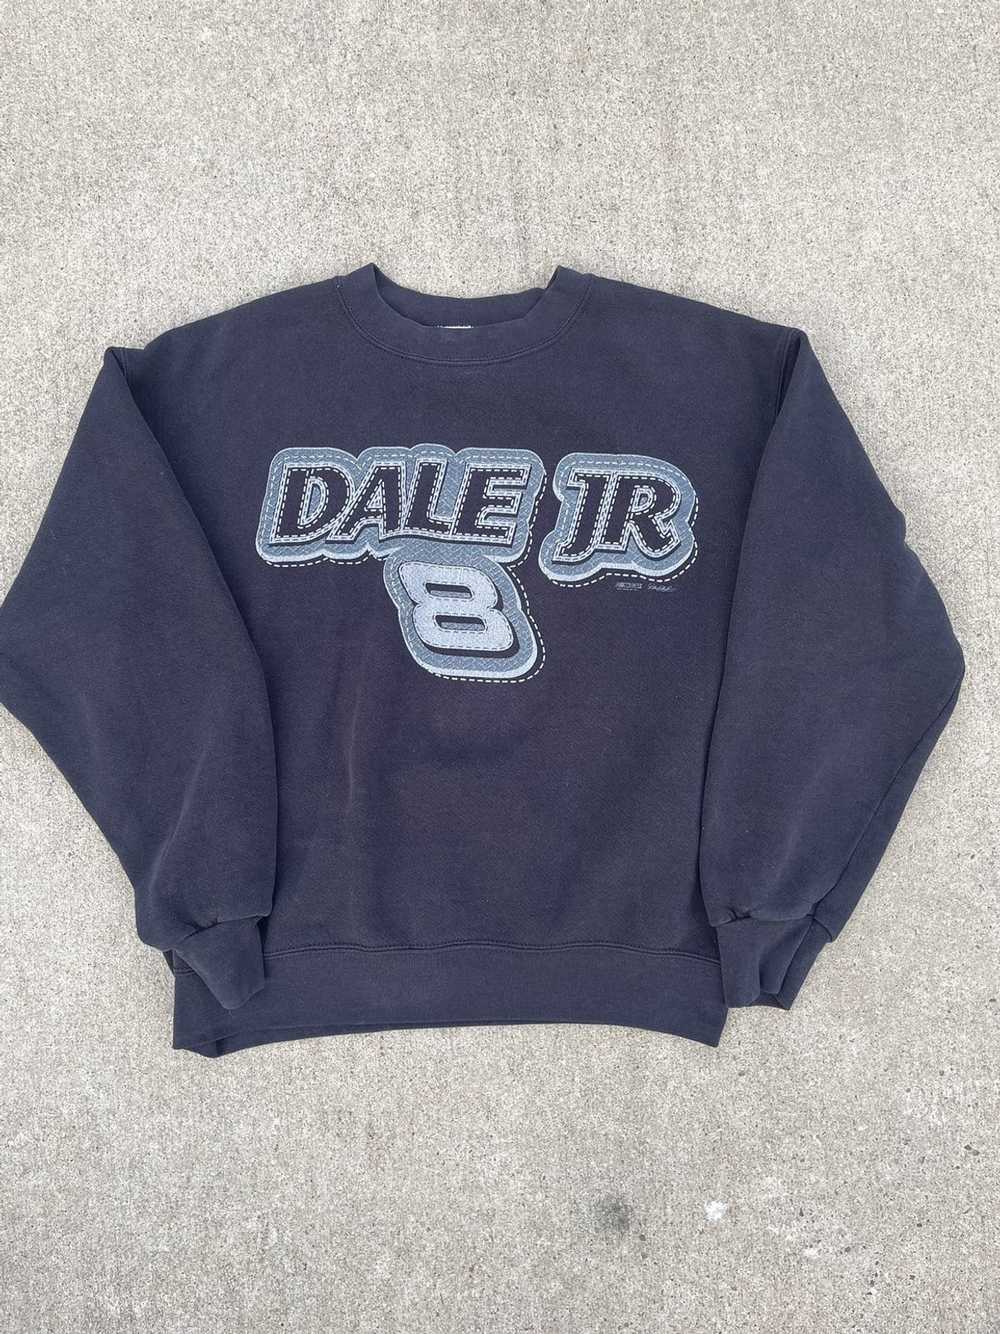 NASCAR × Streetwear × Vintage Vintage Dale Jr cre… - image 1